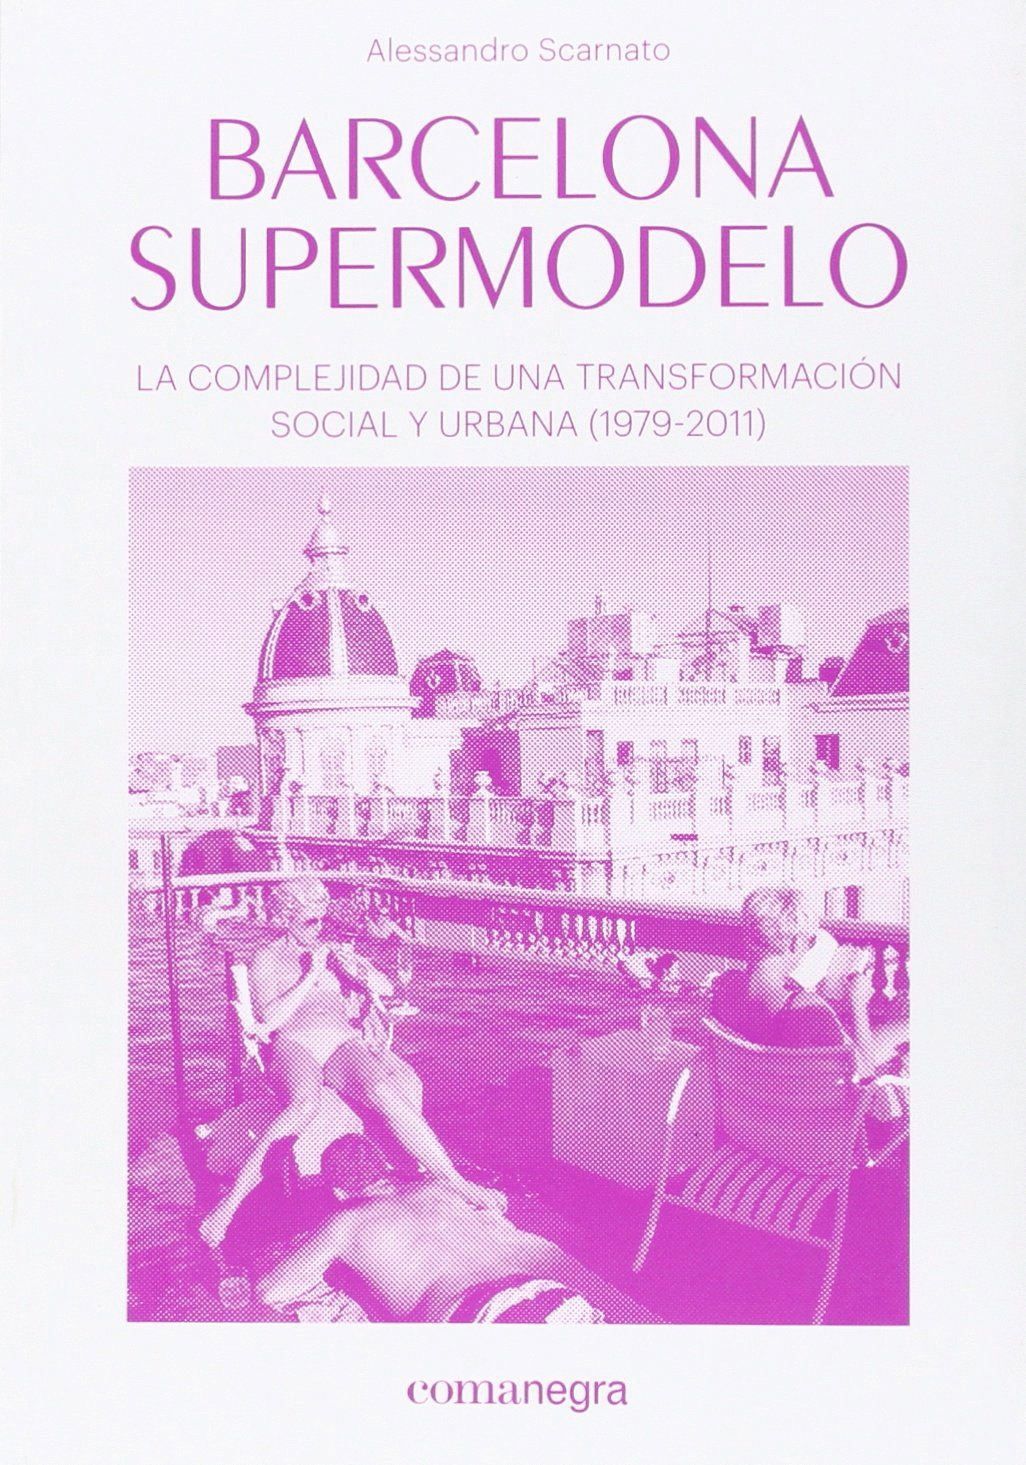 BARCELONA SUPERMODELO: LA COMPLEJIDAD DE UNA TRANSFORMACIÓN SOCIAL Y URBANA (1979-2011)